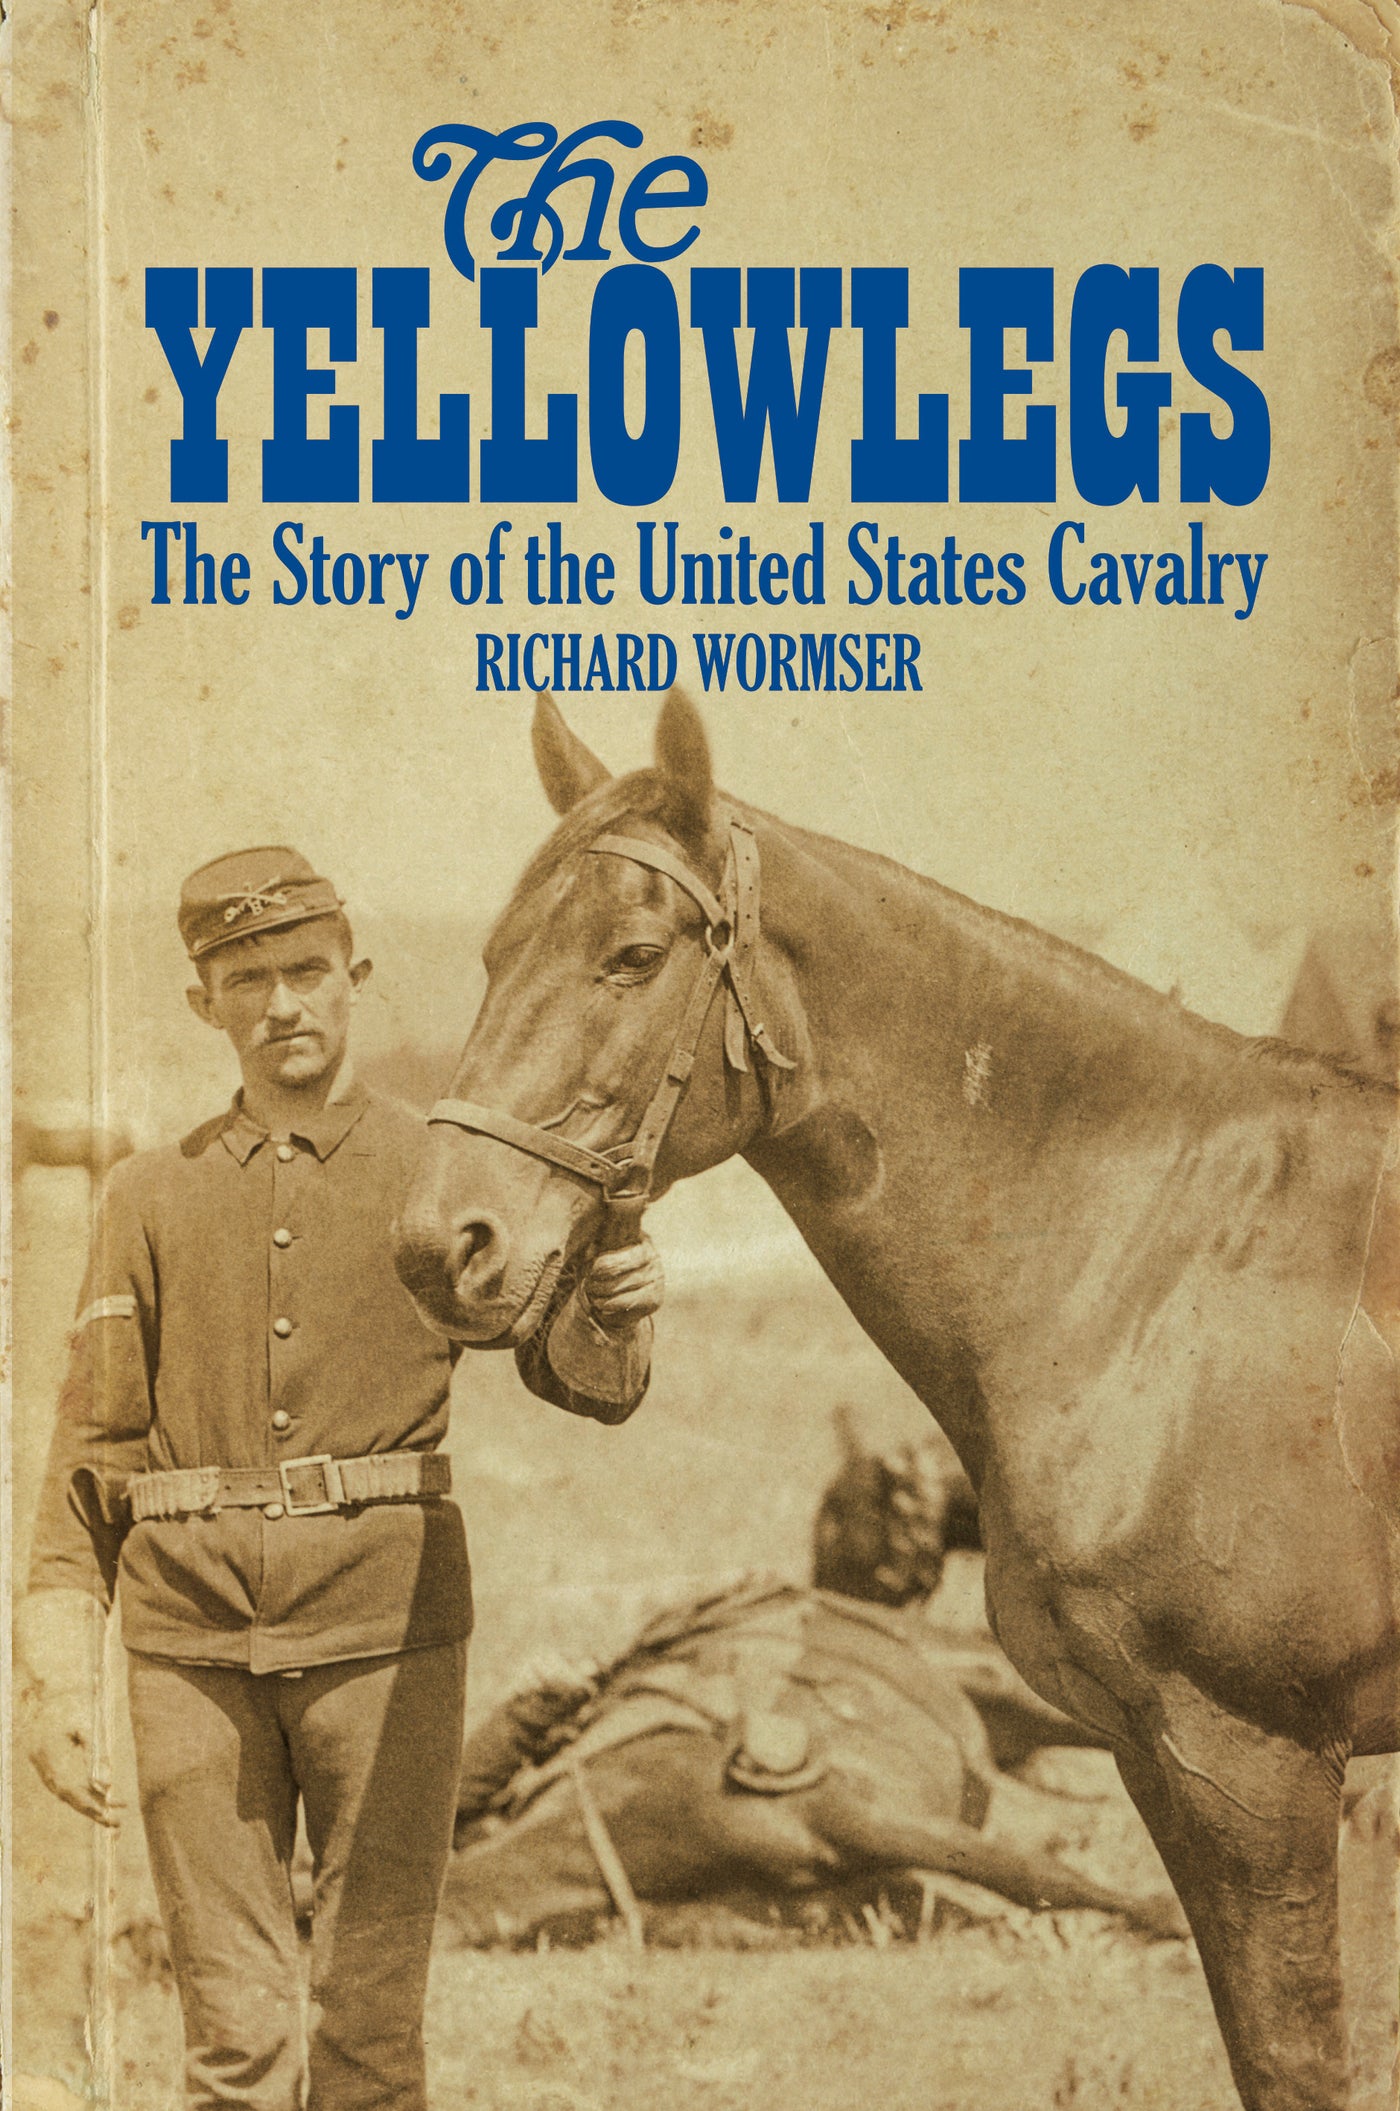 The Yellowlegs